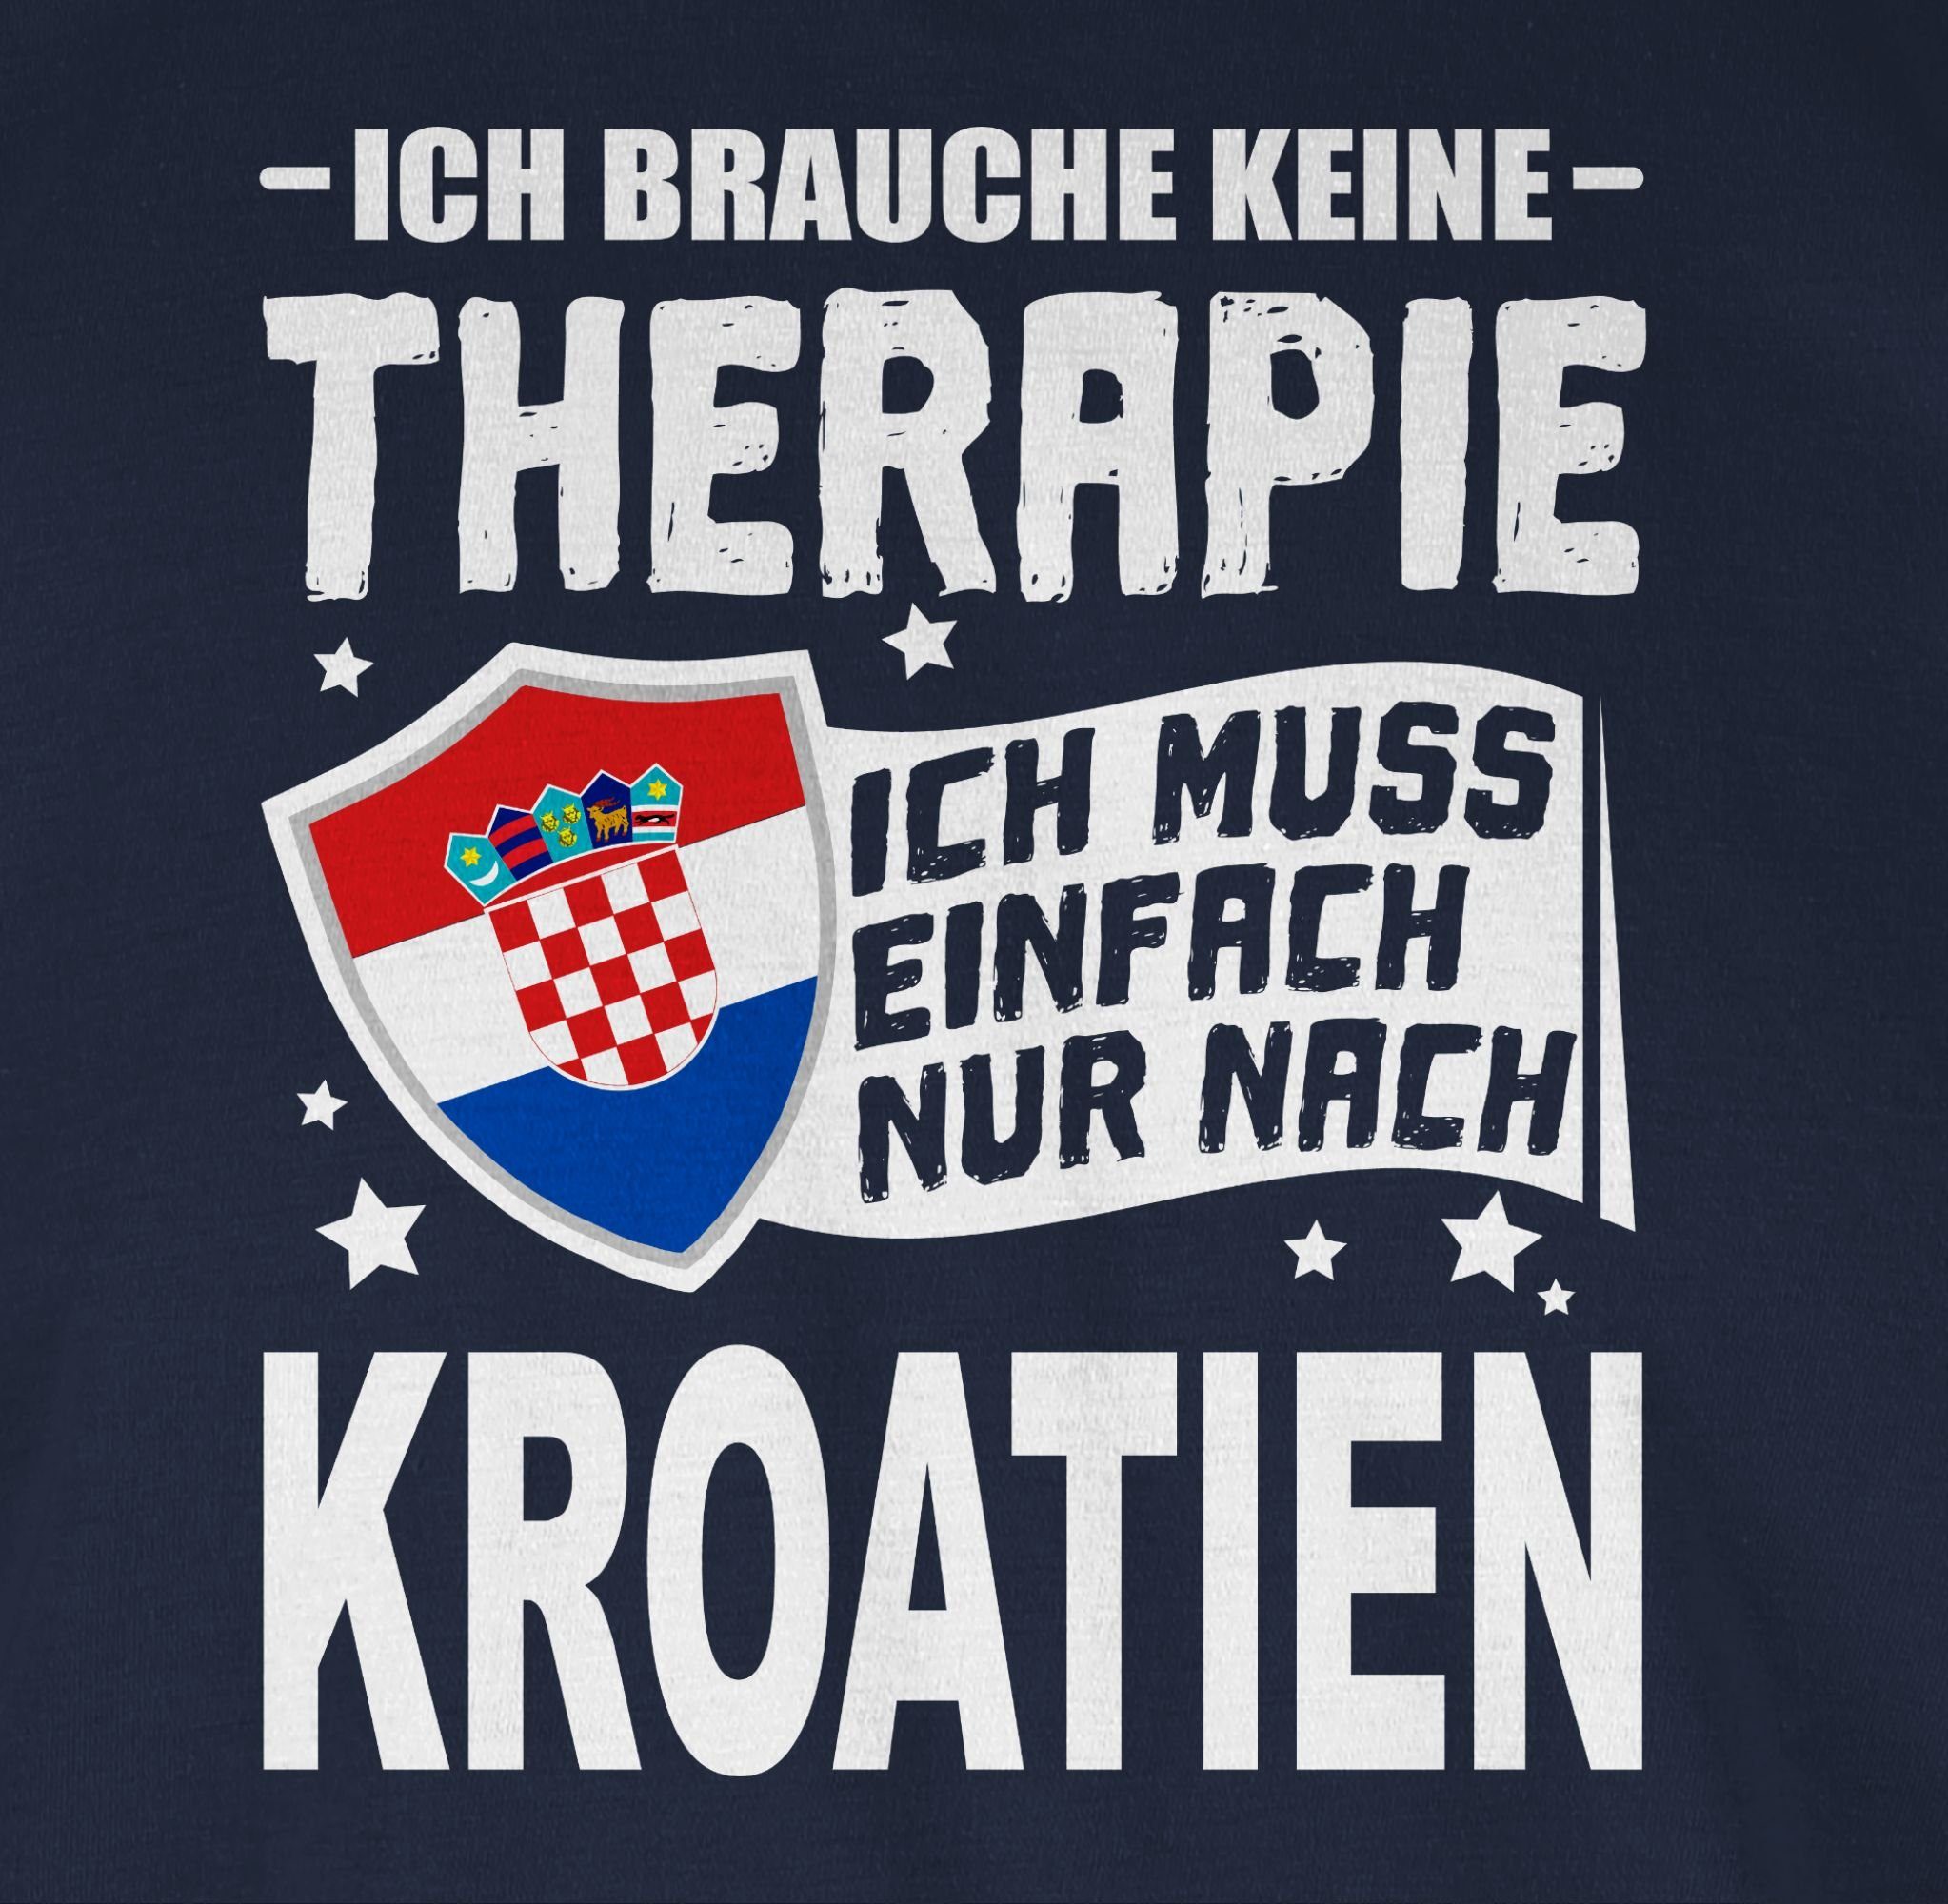 Ich Shirtracer Länder Blau nach Wappen T-Shirt Navy 2 nur Ich keine Therapie Kroatien einfach brauche muss weiß -